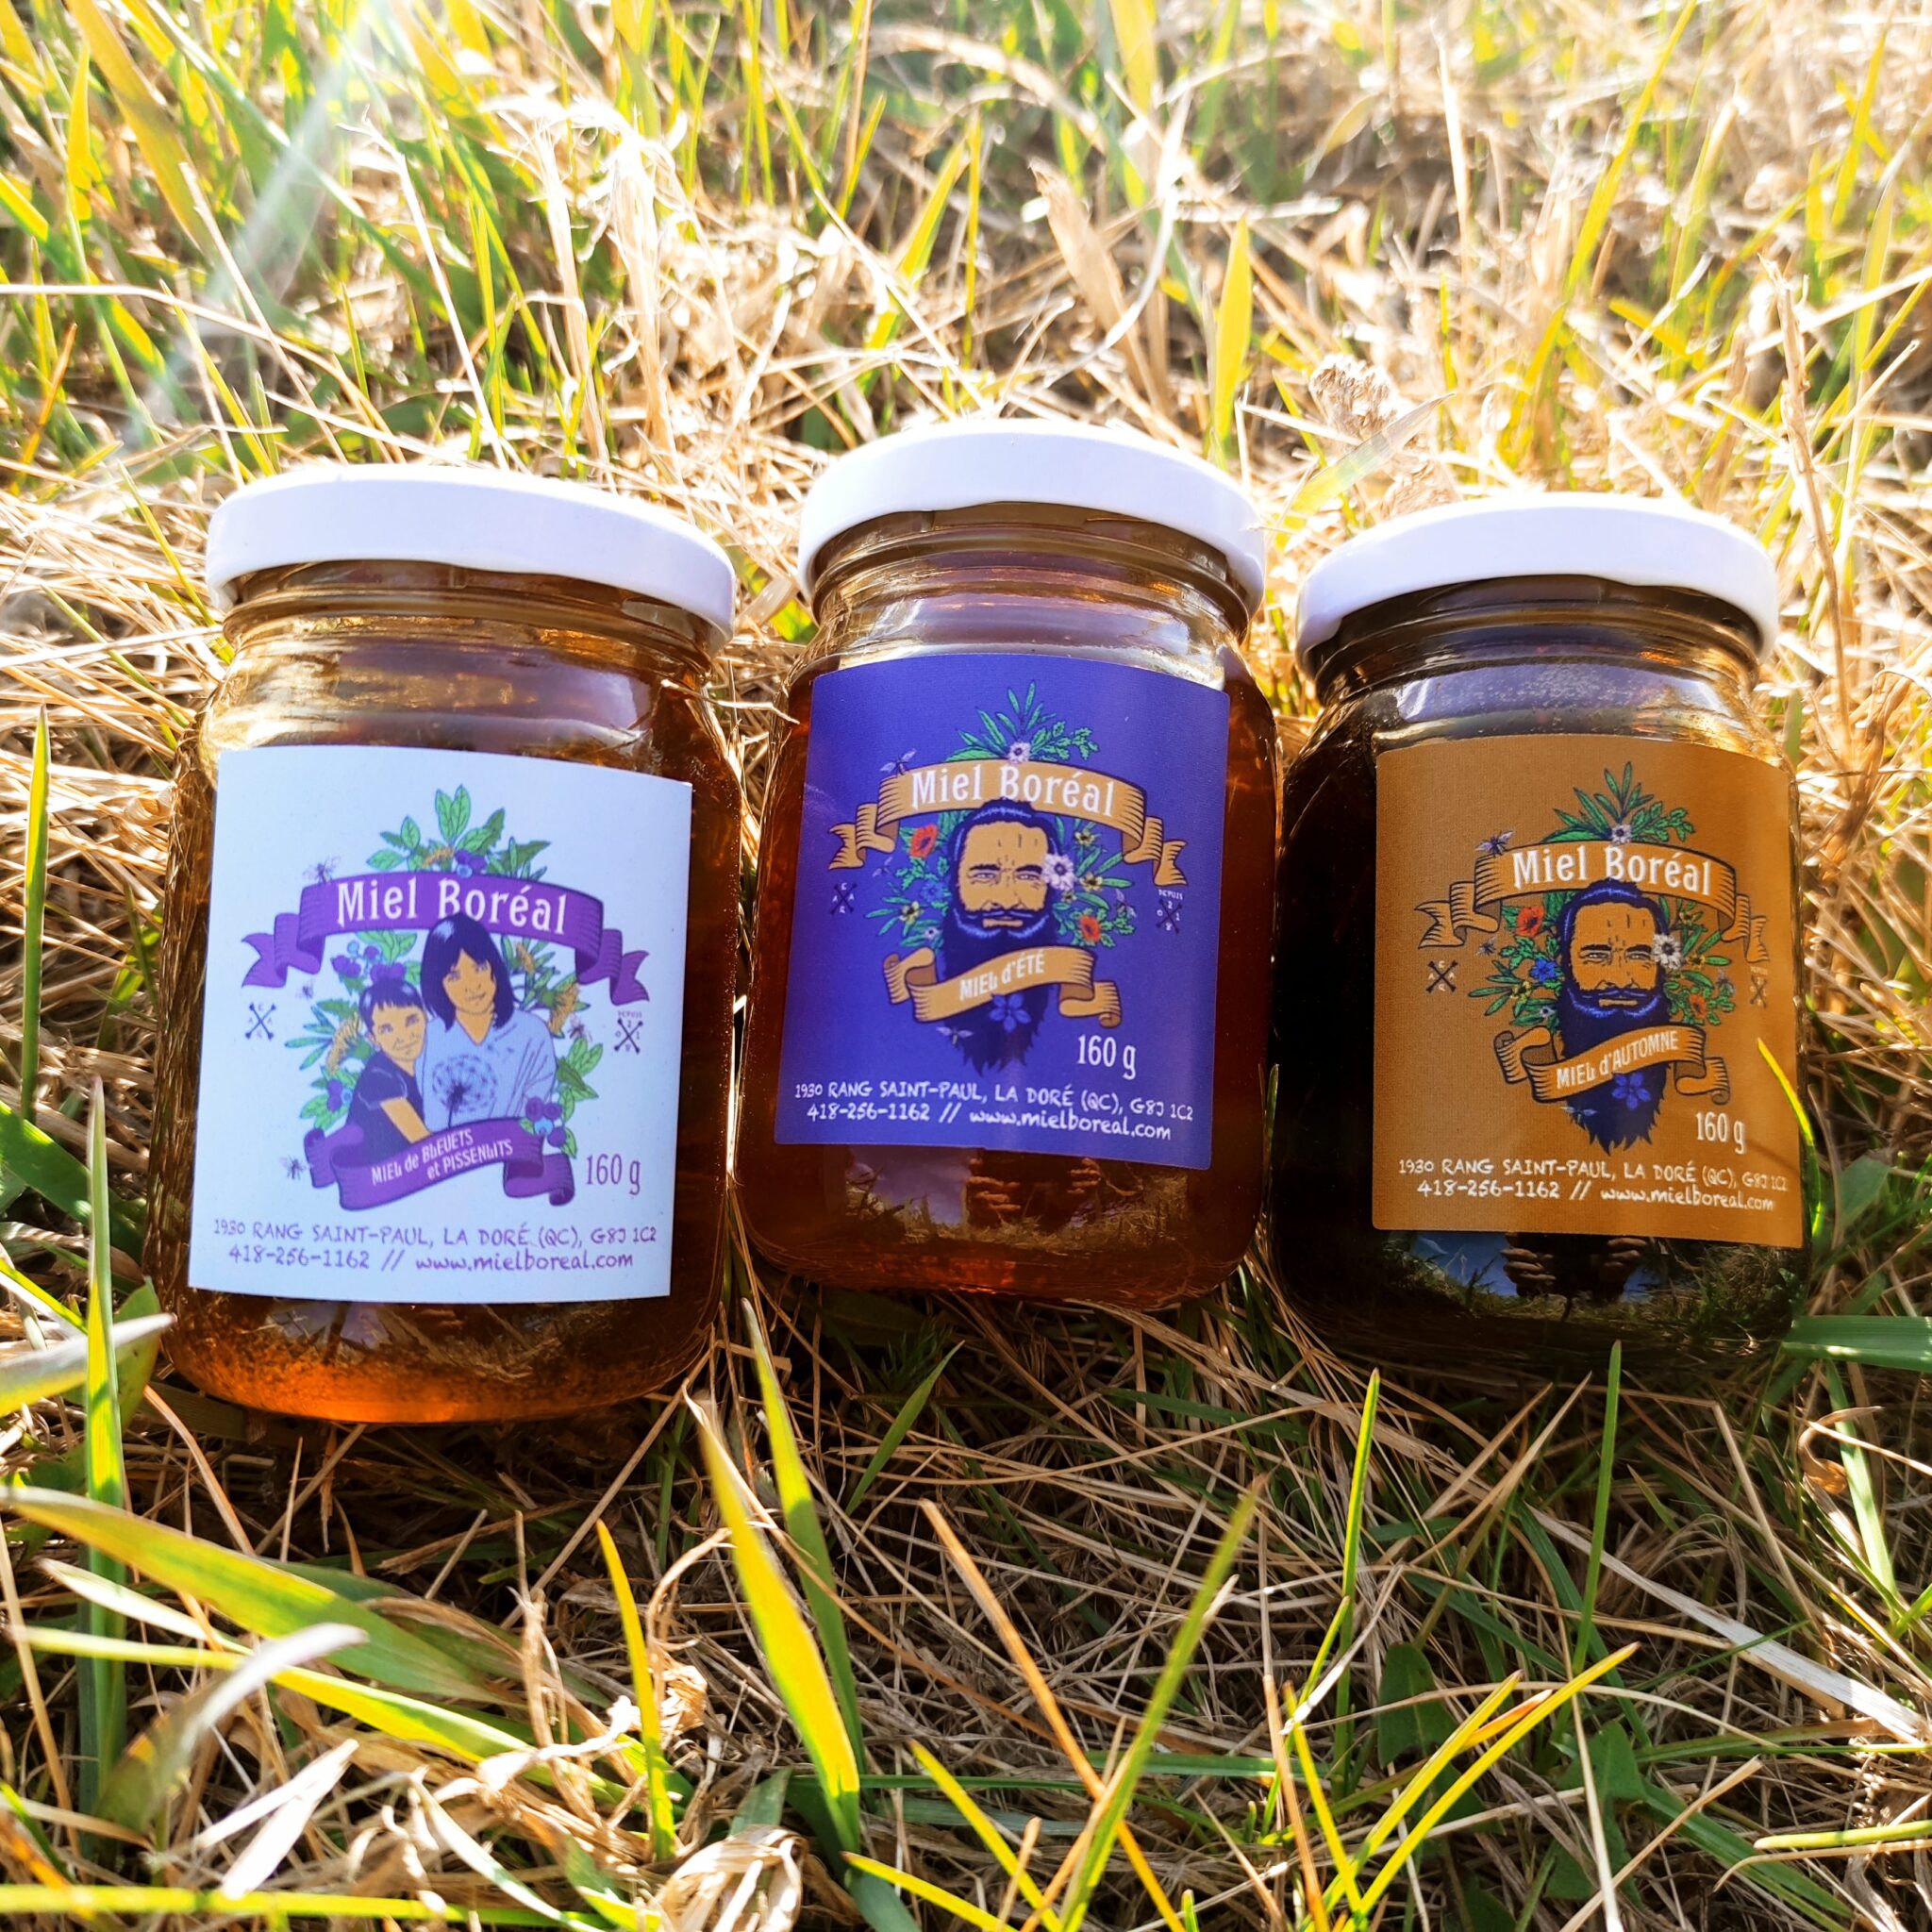 Miel brut d'automne biologique - 500 g – Douceurs des Appalaches